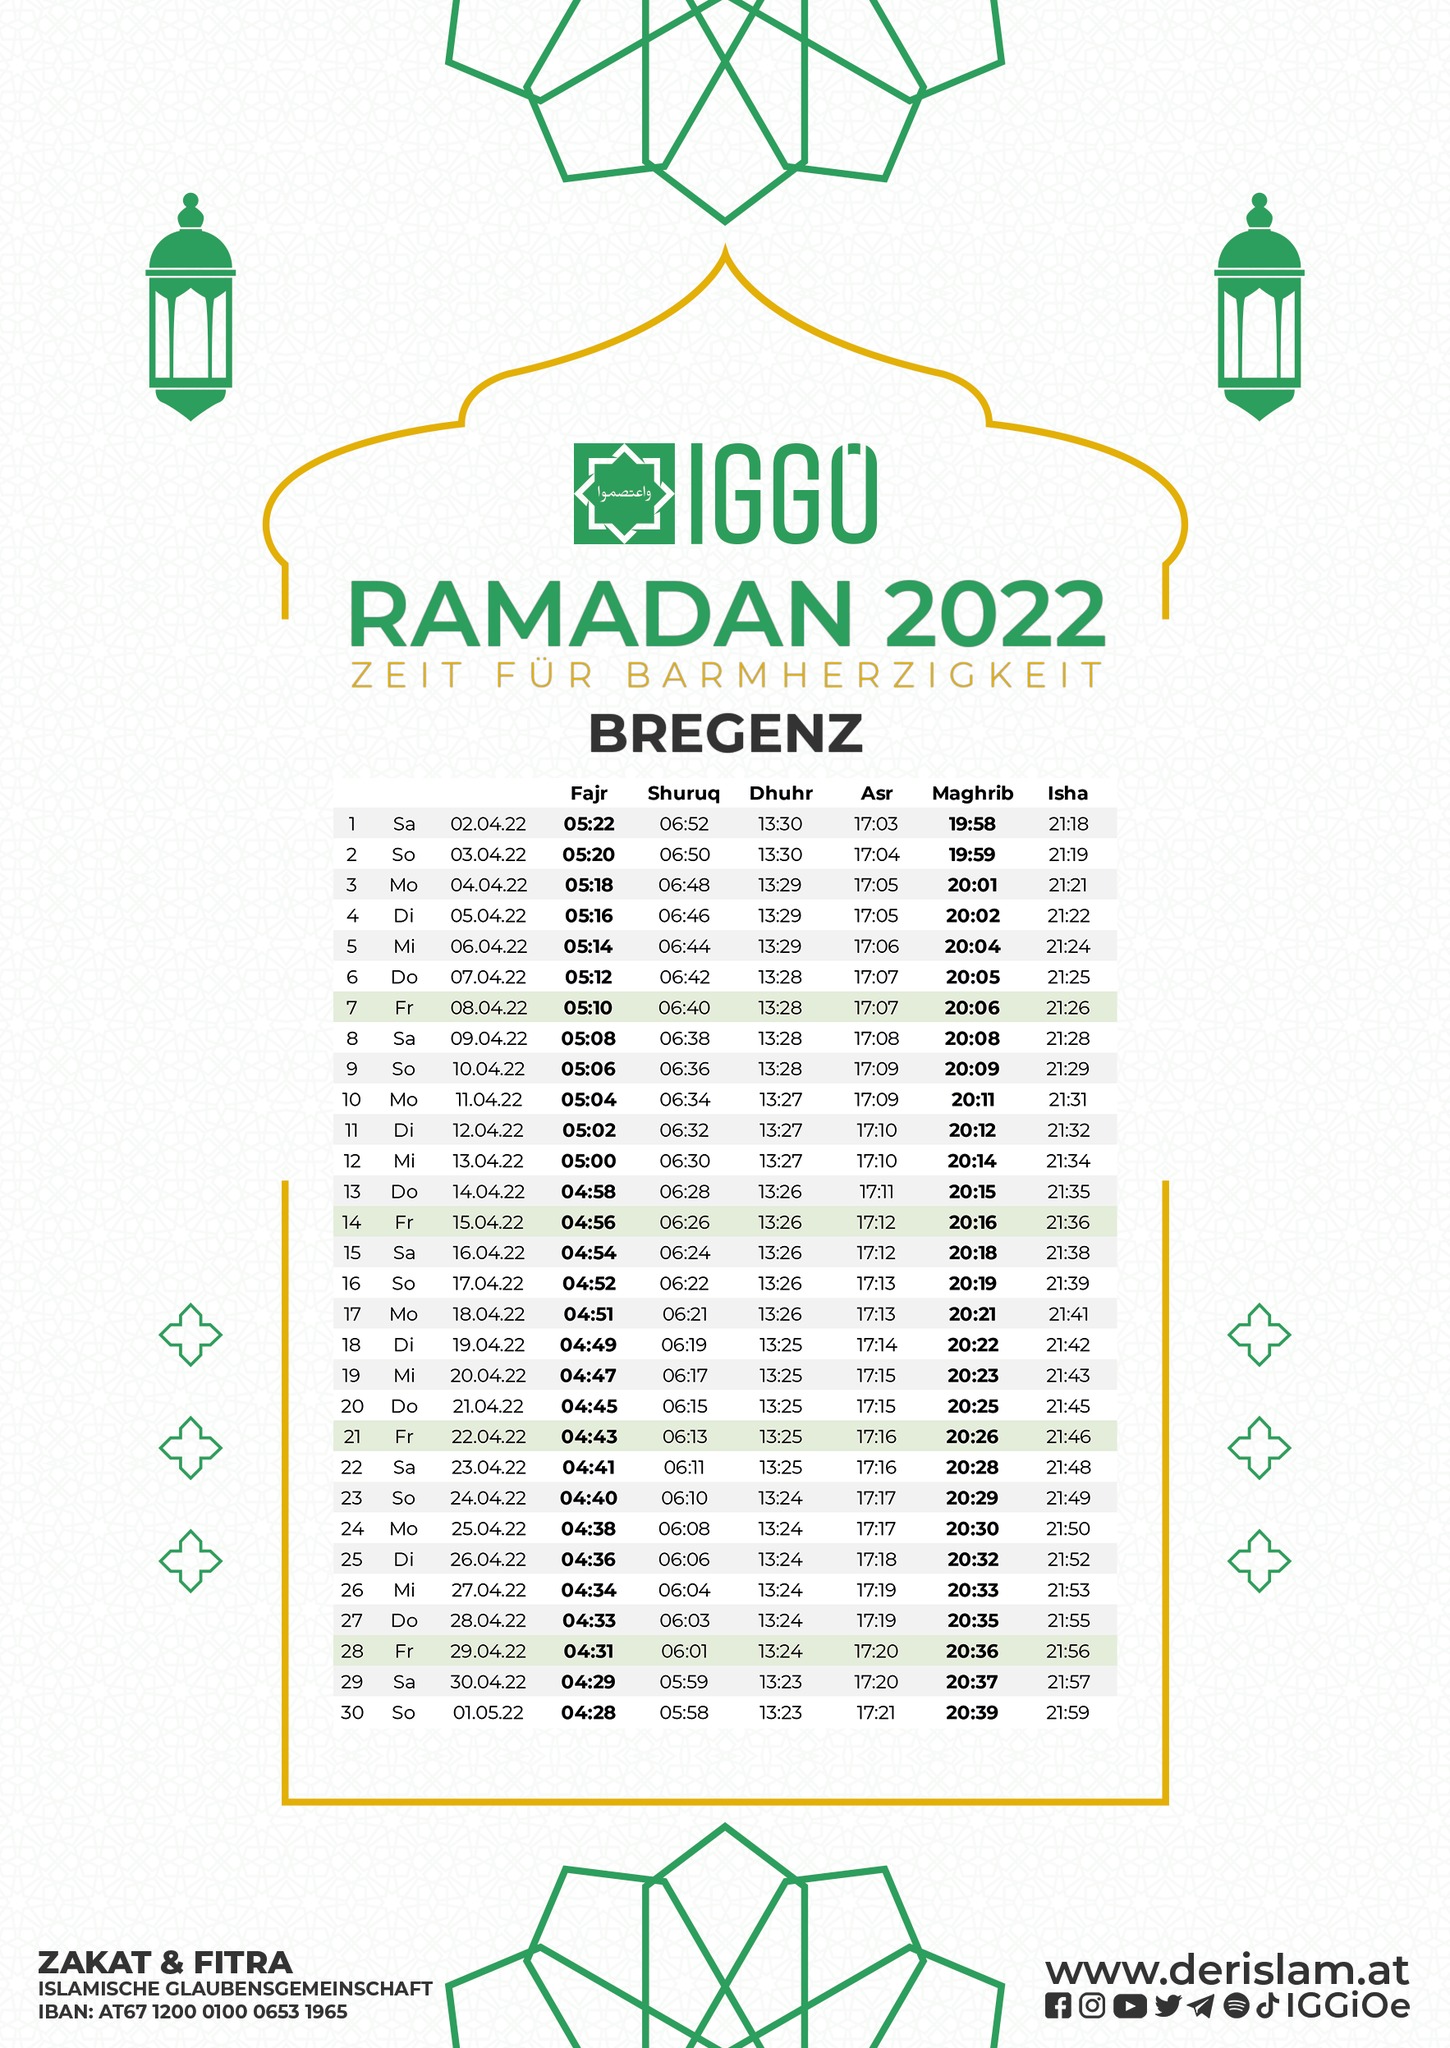 إمساكية رمضان لمدينة برغنز 2022